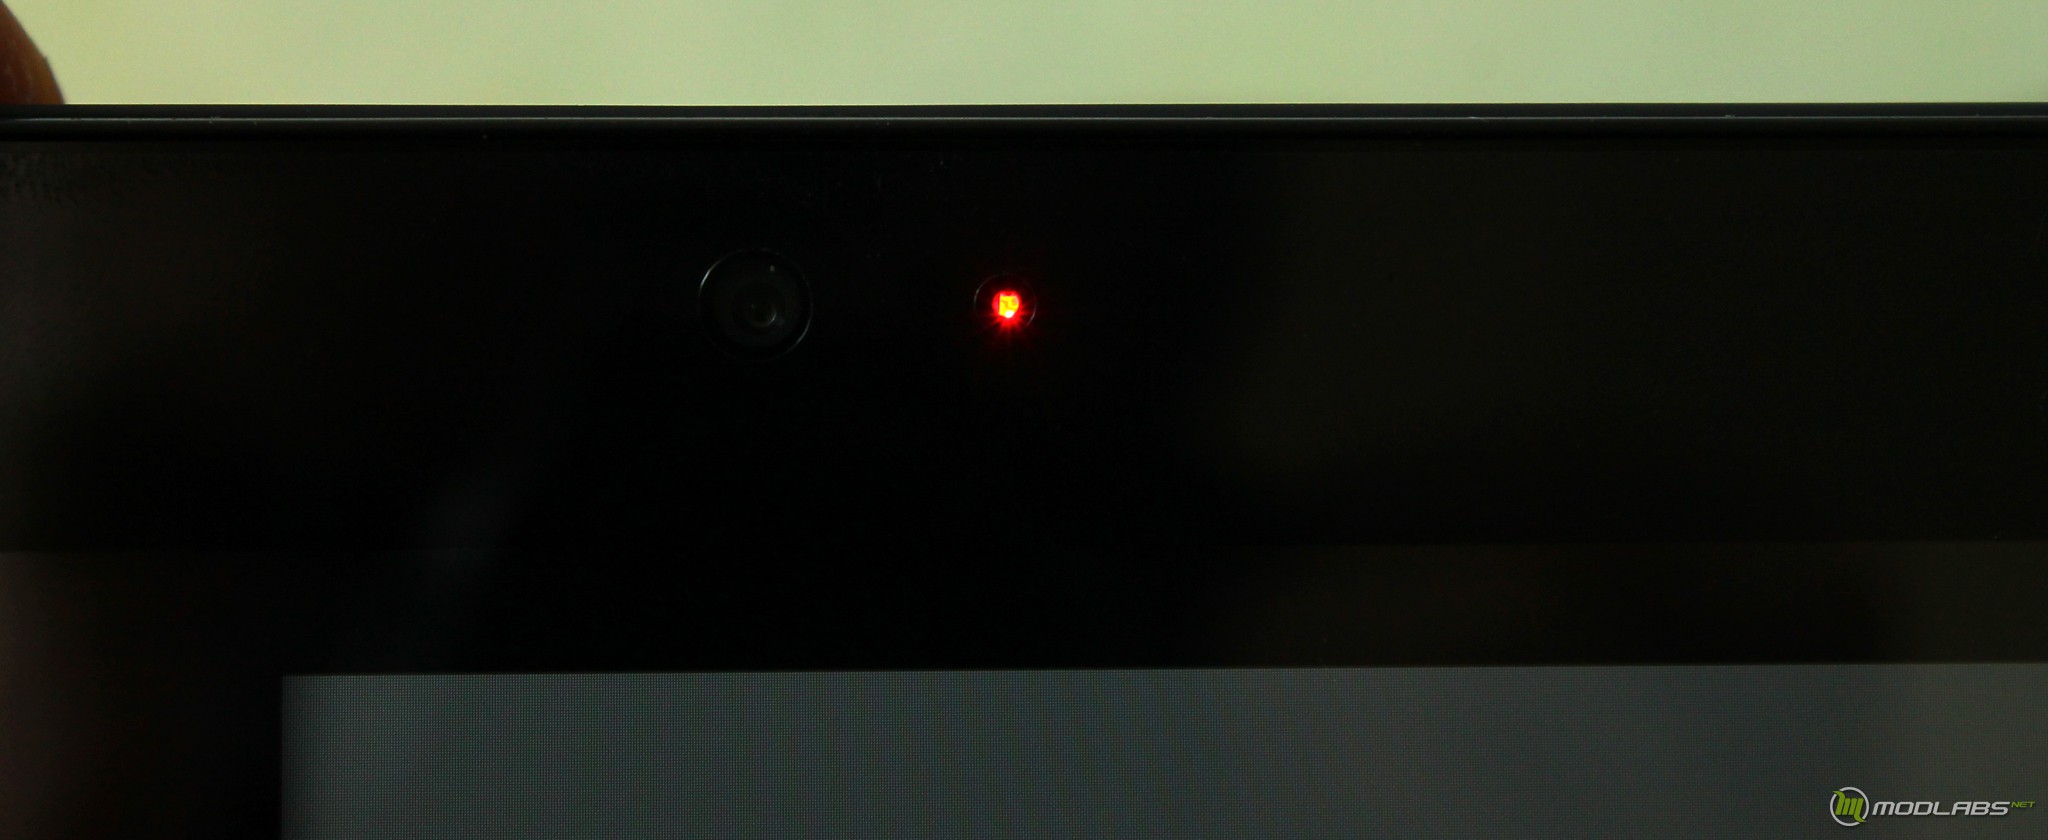 Светящаяся точка на экране. Красные точки на экране телевизора. Красные мерцающие точки на мониторе. Красная лампочка на телевизоре. Камера с красной точкой.